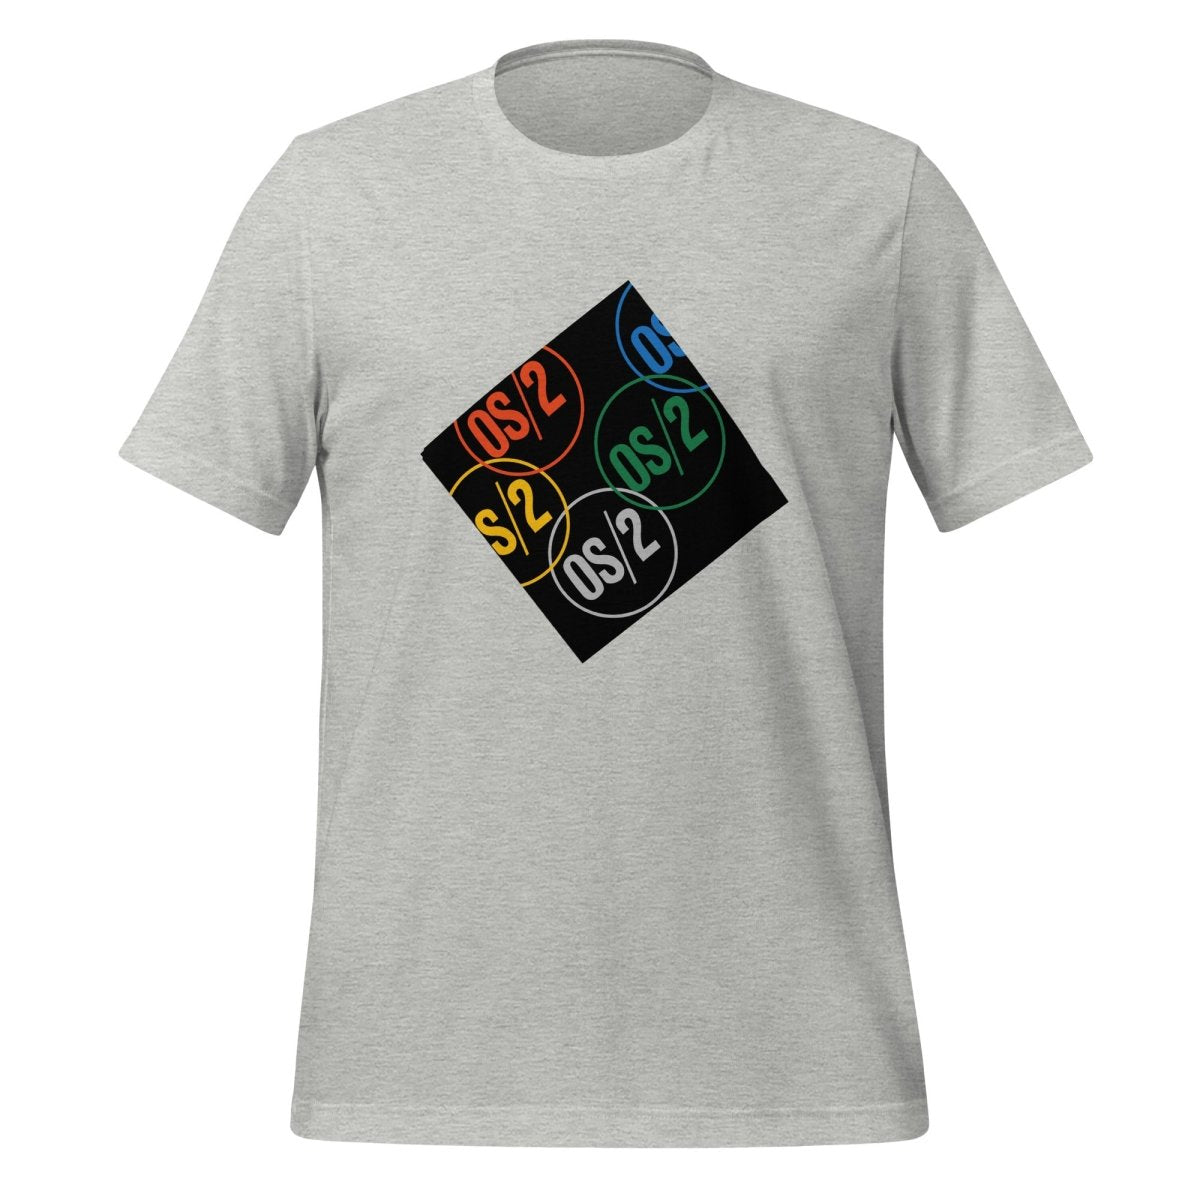 OS/2 Logo T - Shirt (unisex) - Athletic Heather - AI Store